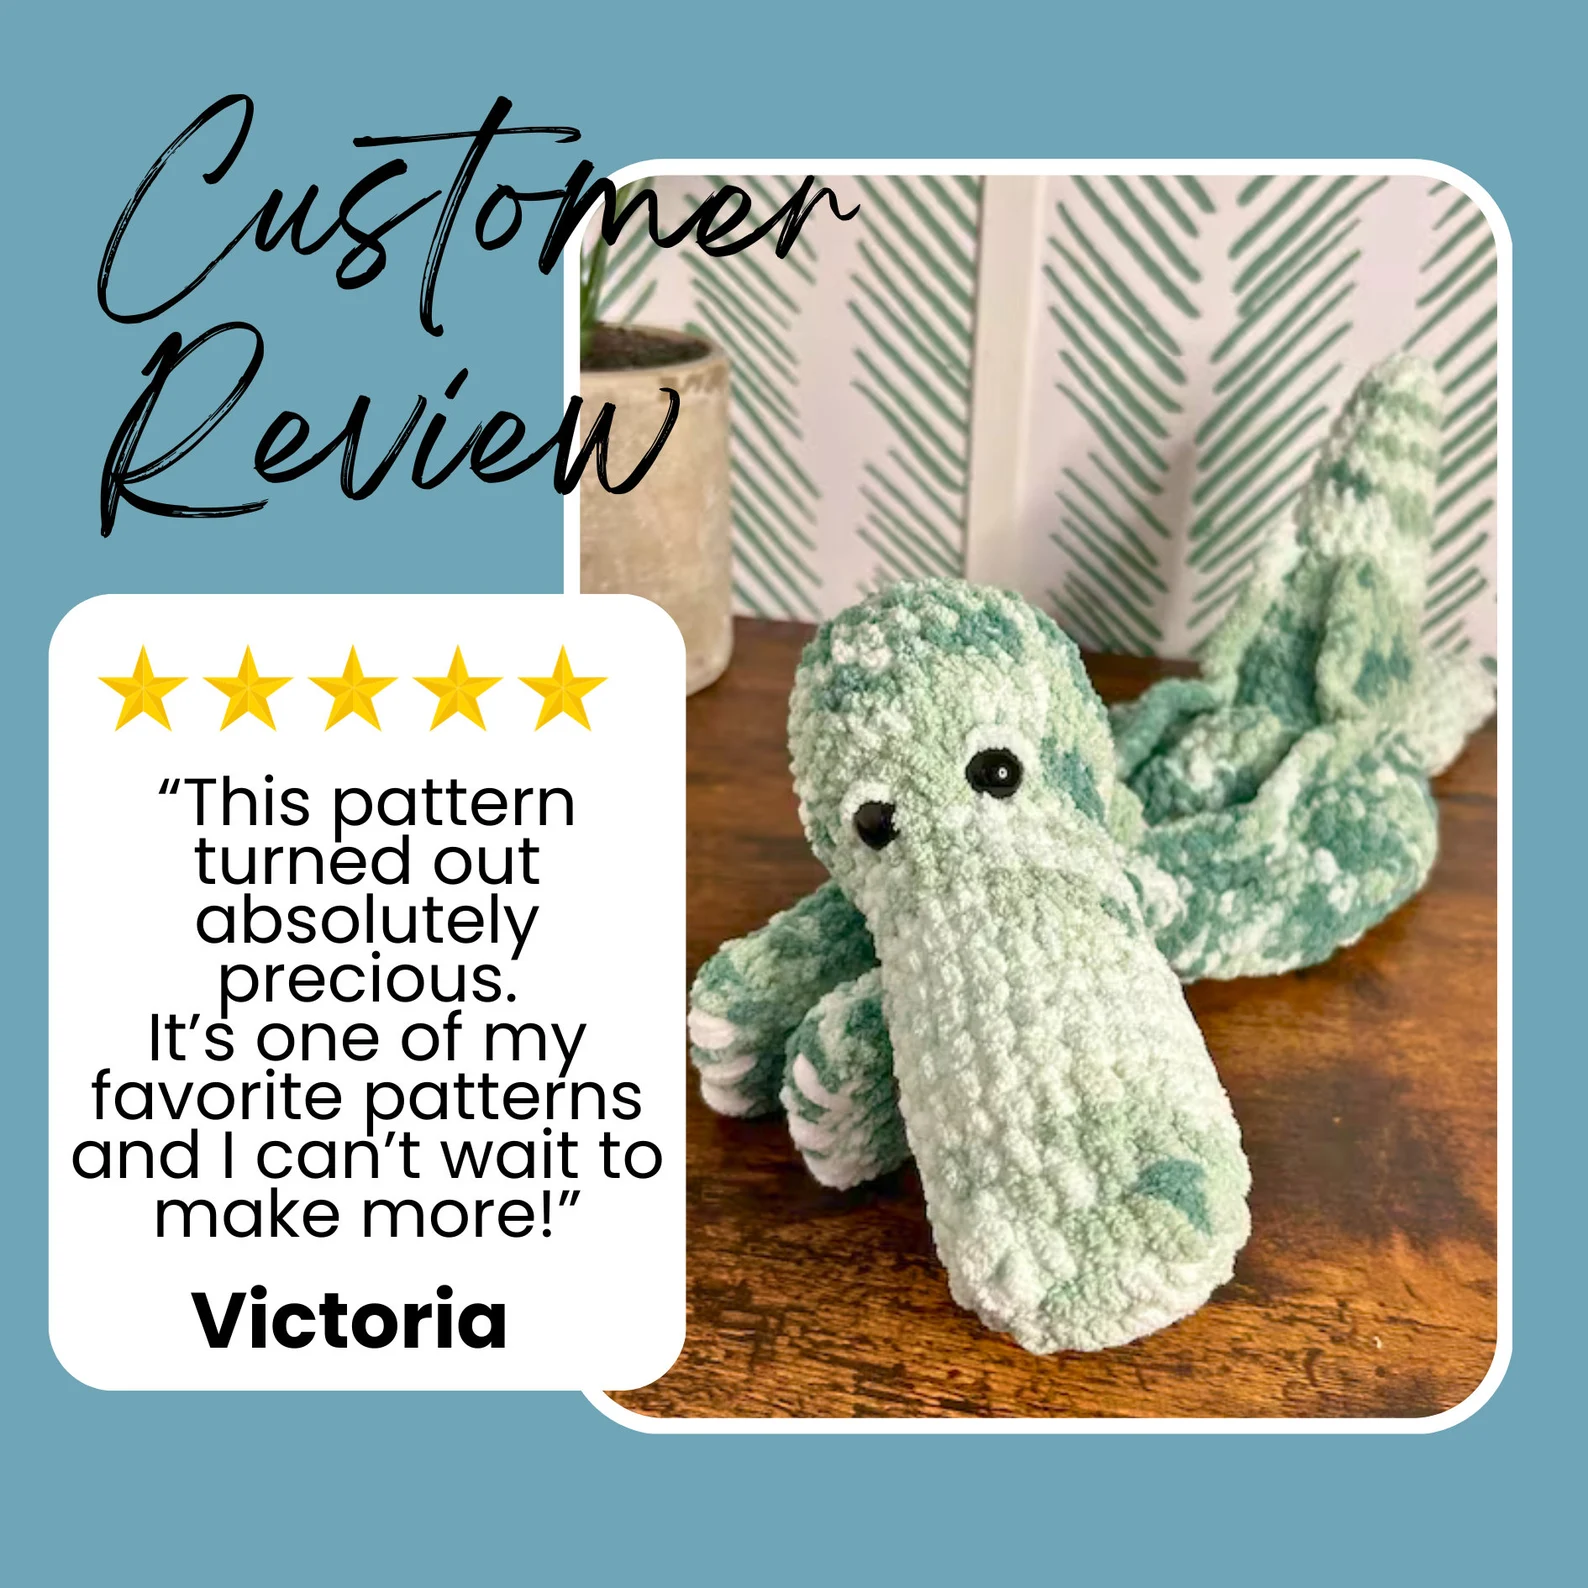 crochet alligator 5 star review